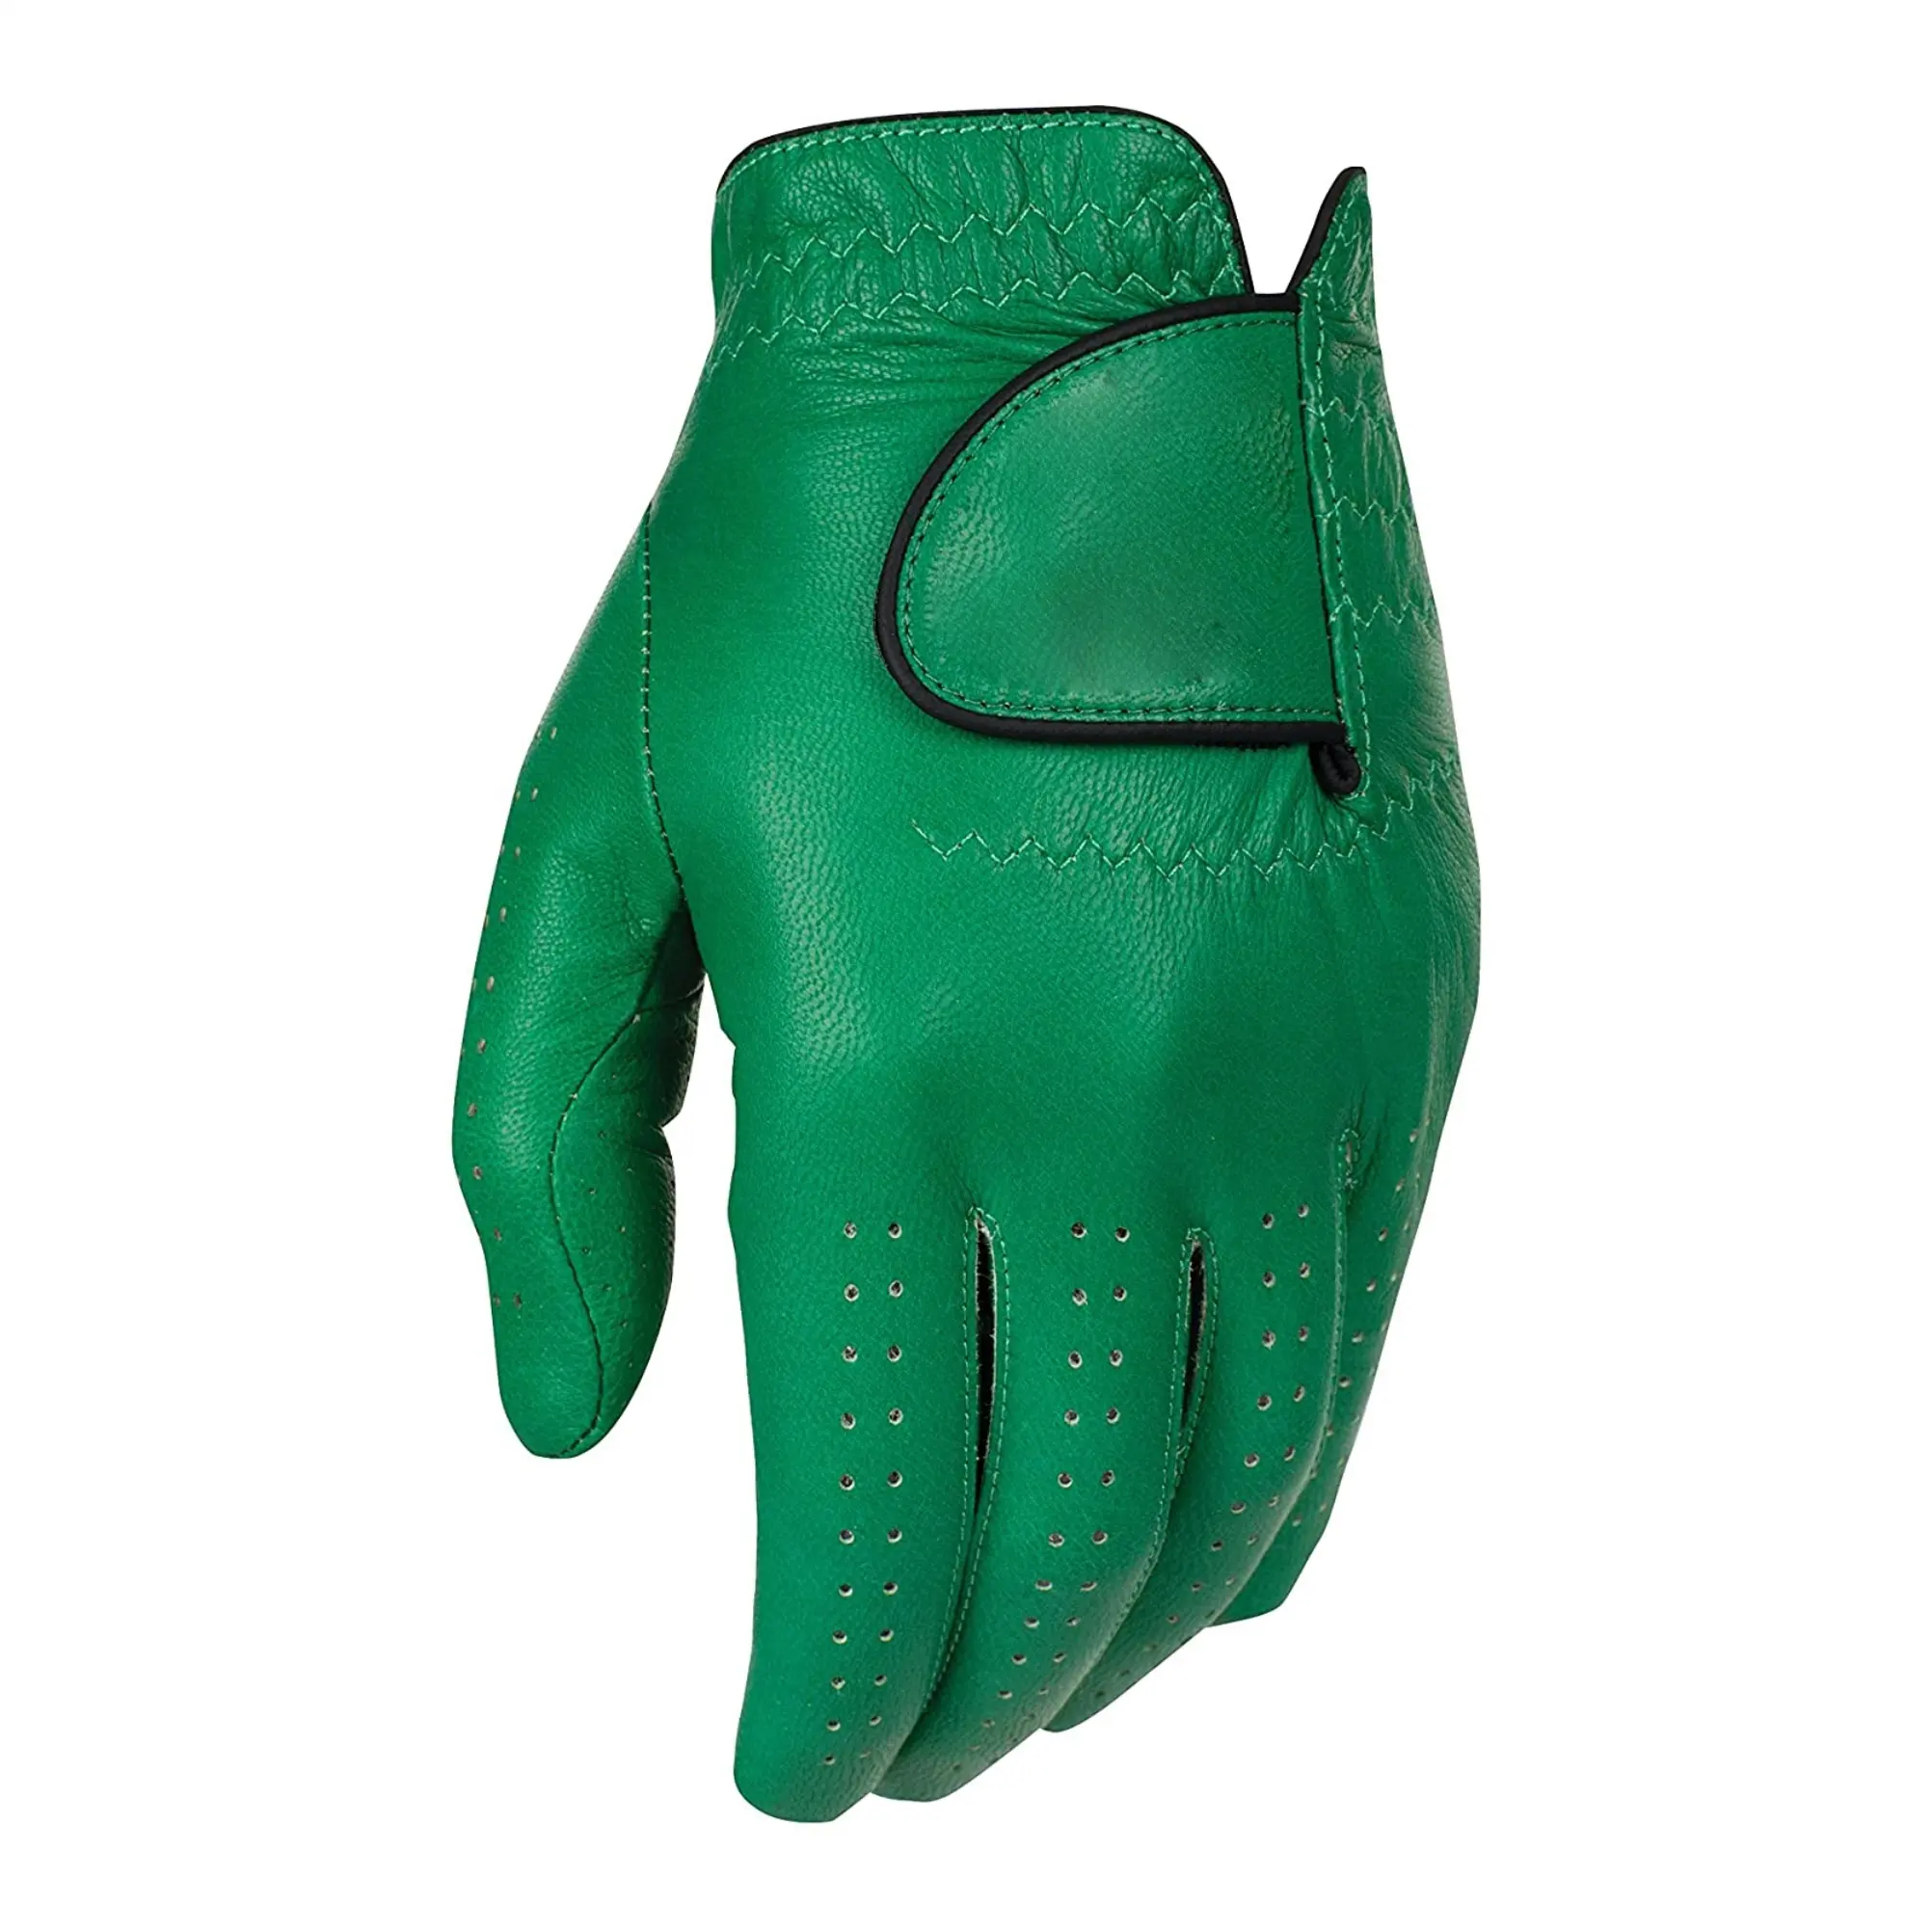 Özel yapılmış yumuşak yeşil deri siyah astar ile Golf eldiven kaliteli erkekler en çok satan için kullanılabilir